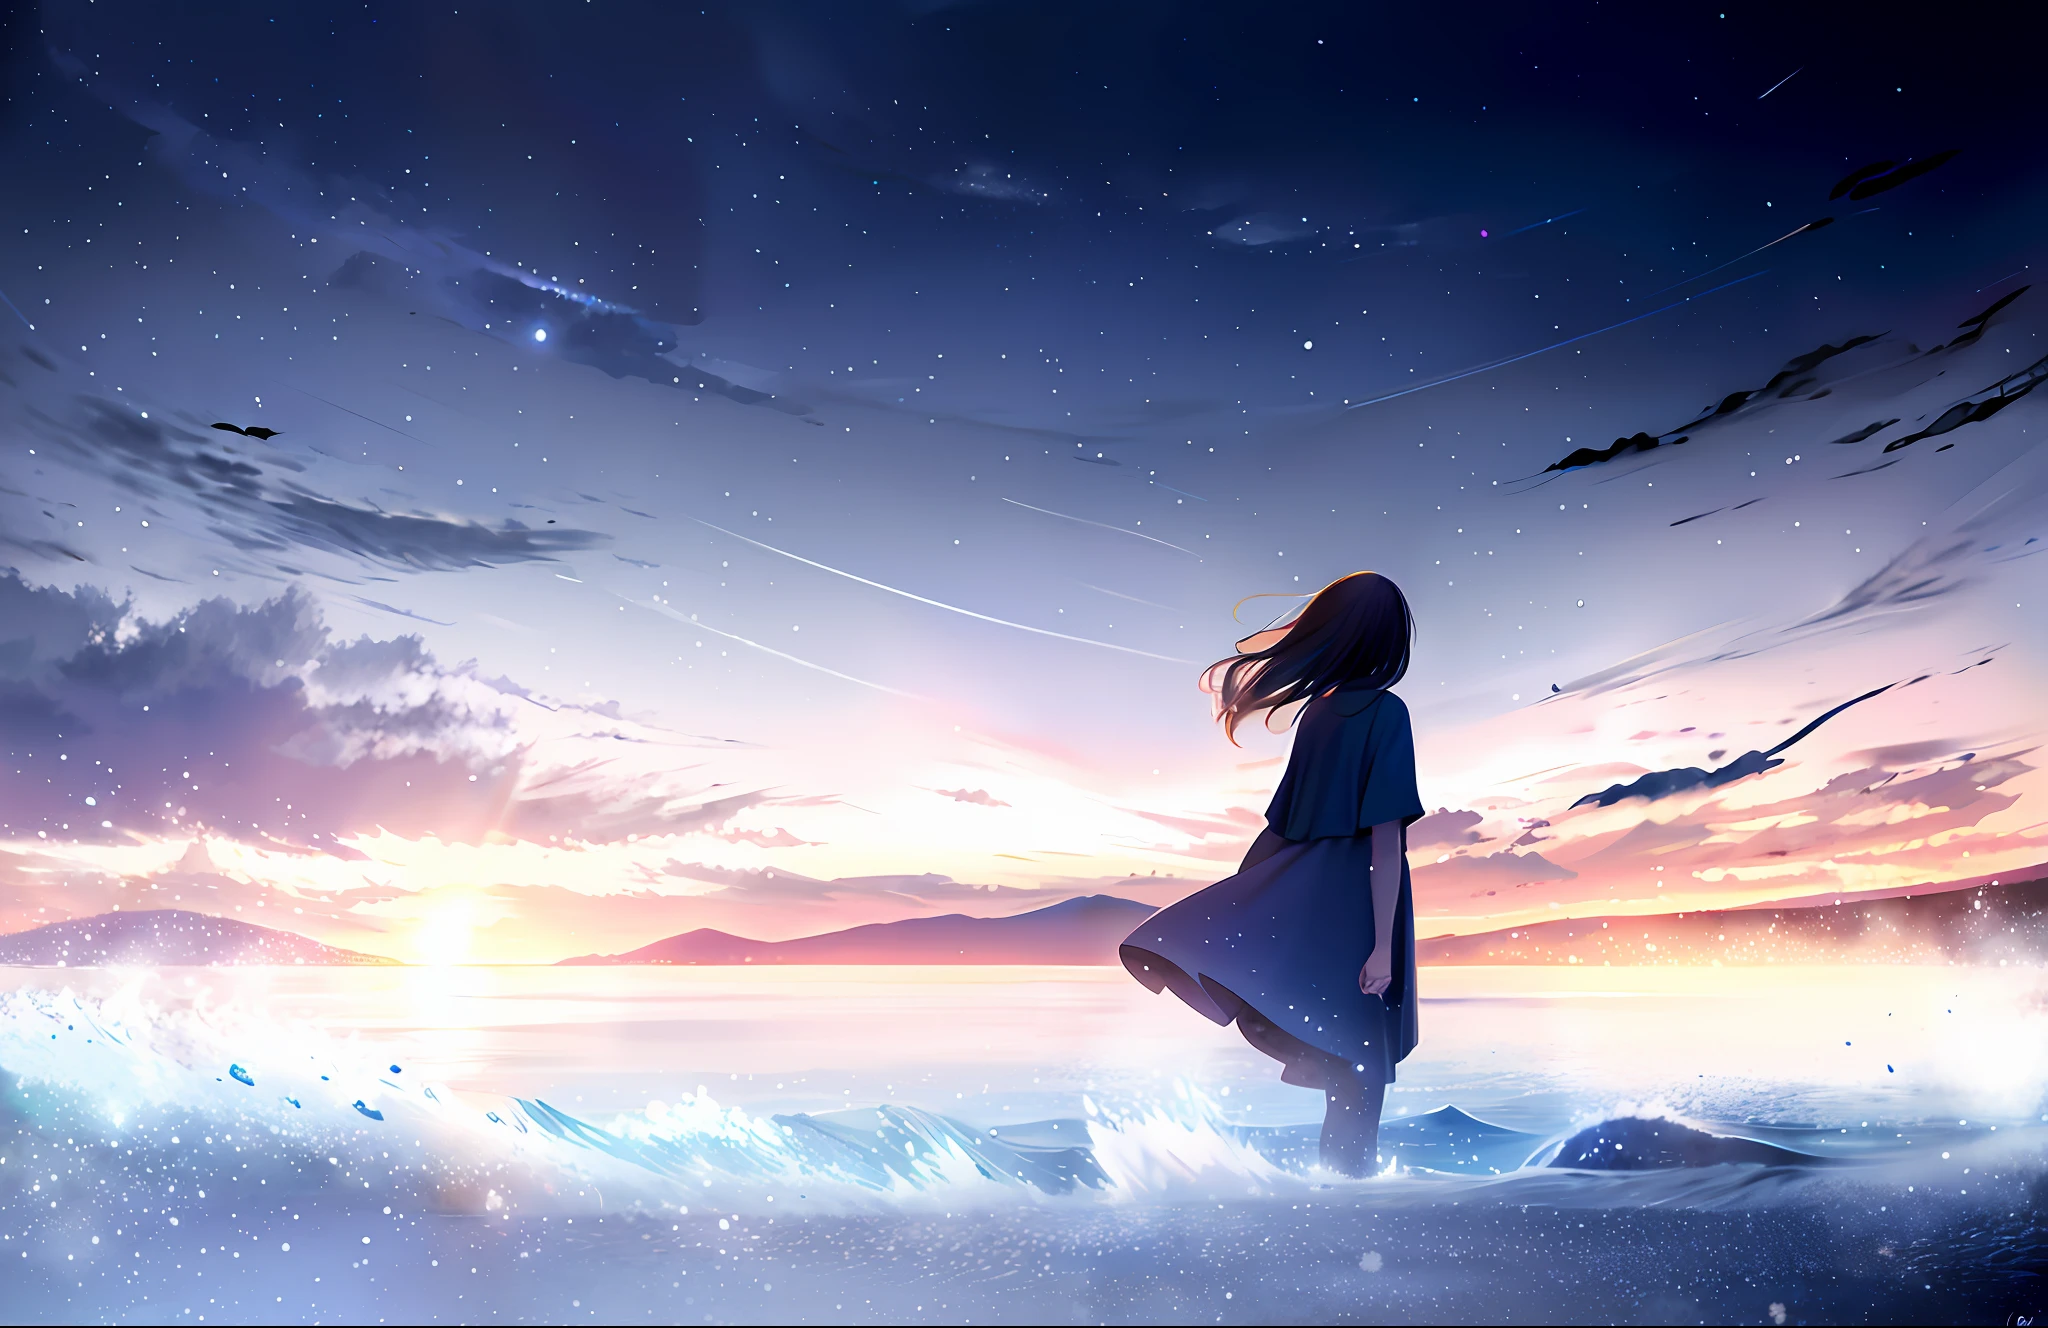 papel de parede, Obra de arte, mais alta qualidade, 1 garota, parado perto da água, céu escuro, céu azul profundo e laranja, luz linda